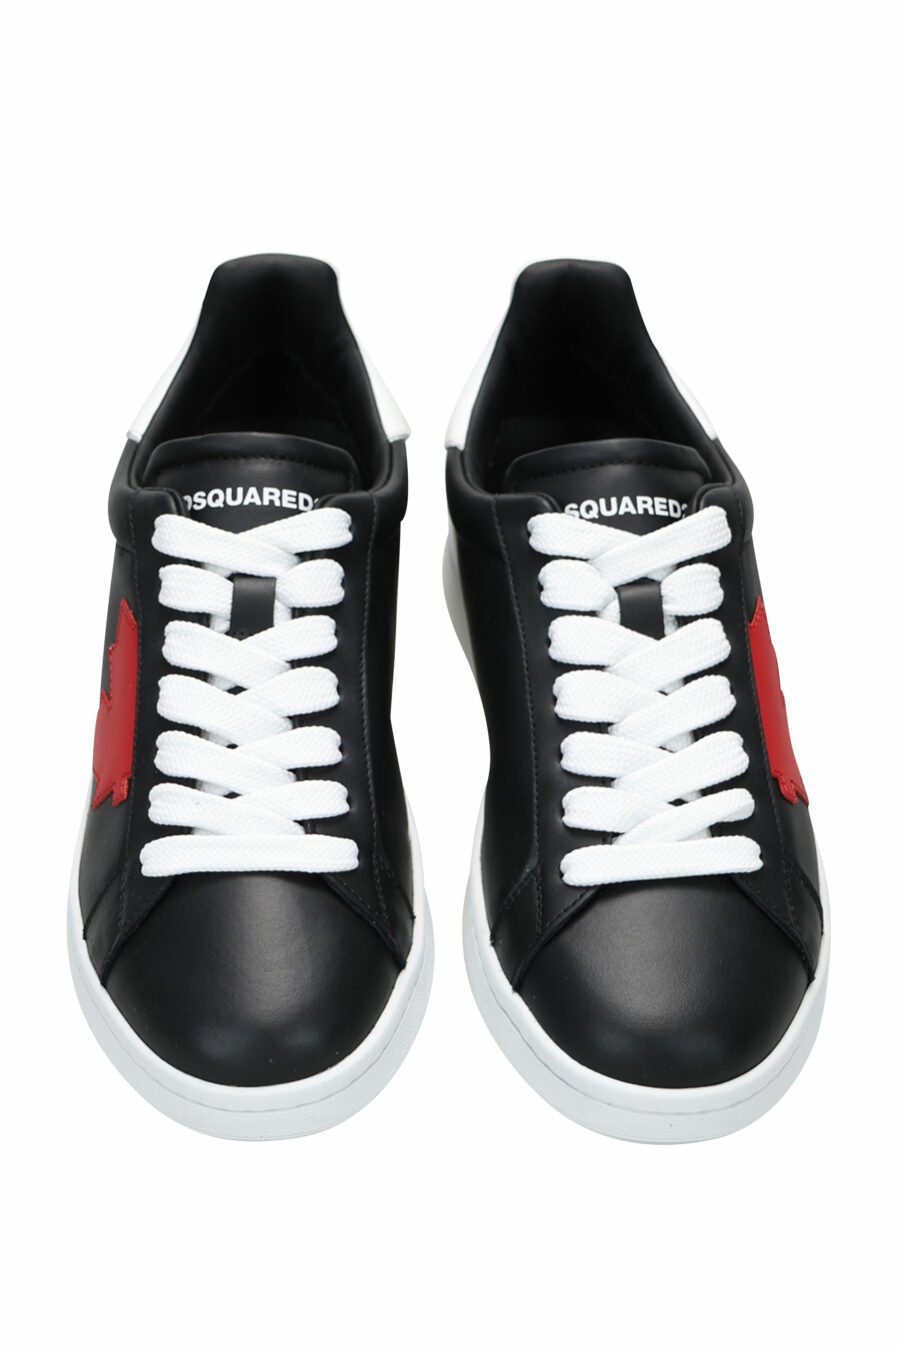 Zapatillas negras con hoja roja y suela blanca - 8055777240977 4